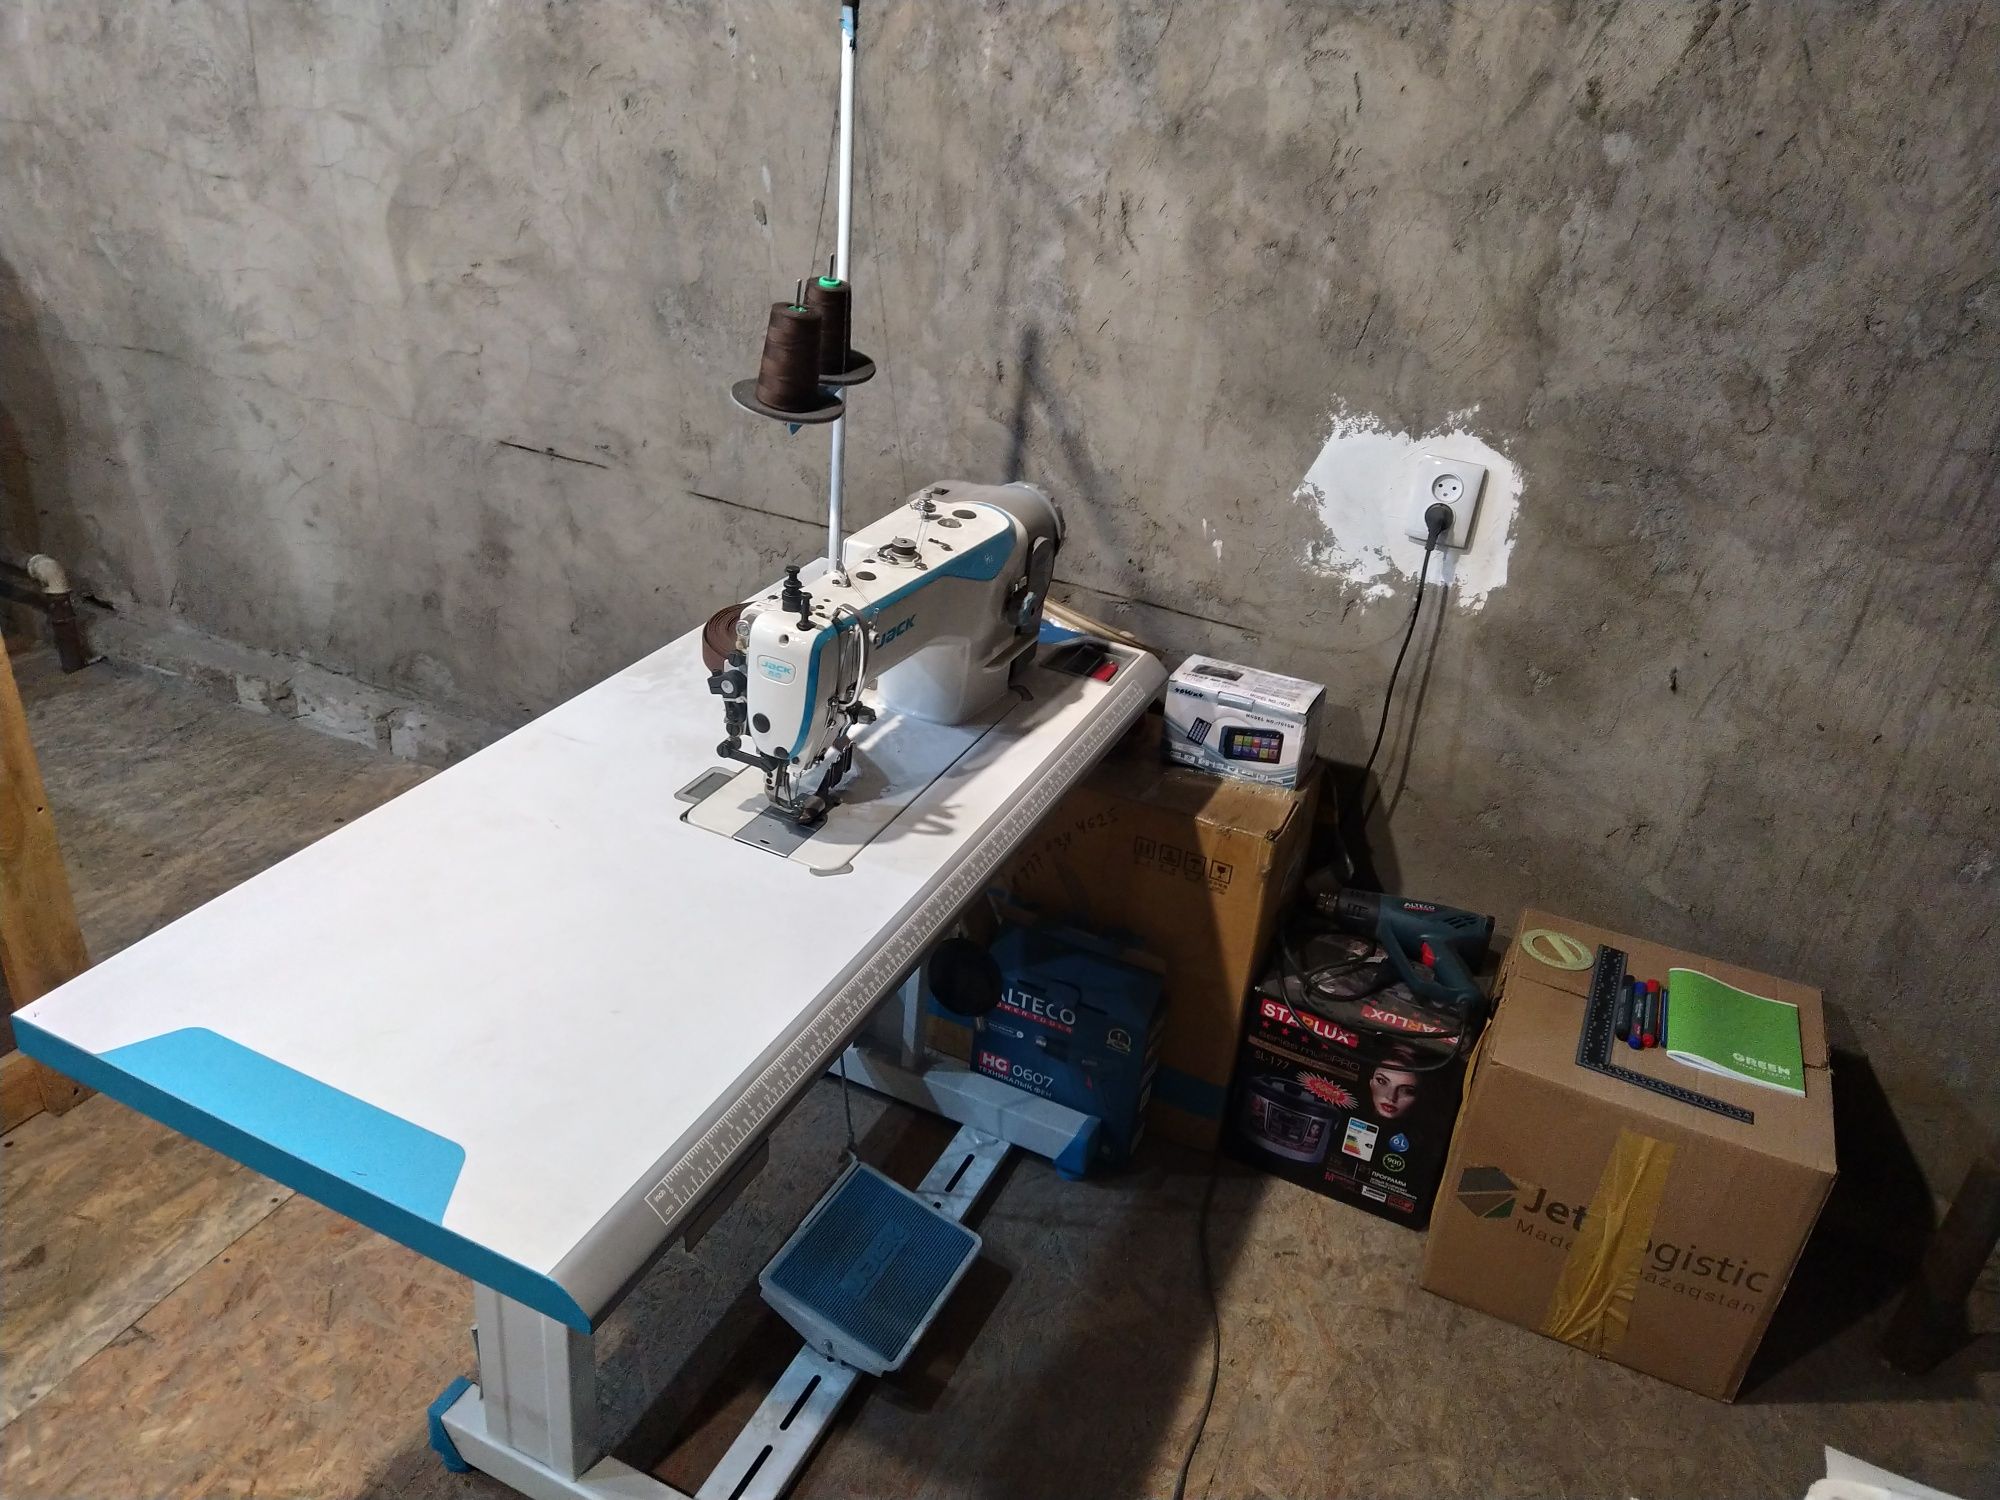 Продам профессианальную промышленную швейную машинку Jack H2